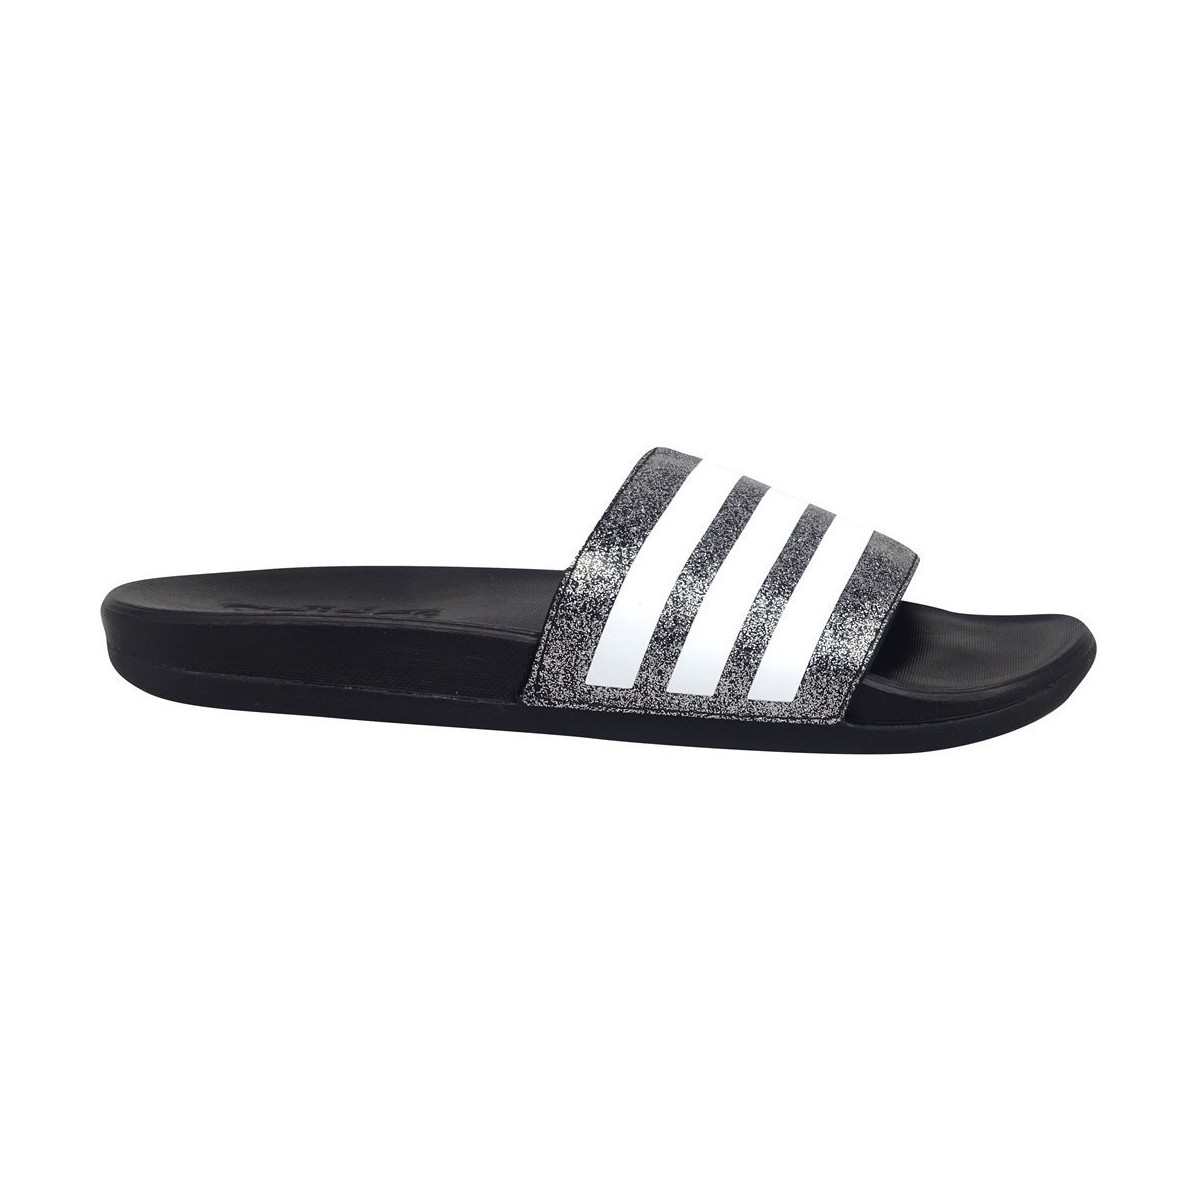 Schuhe Damen Wassersportschuhe adidas Originals Adilette Comfort Schwarz